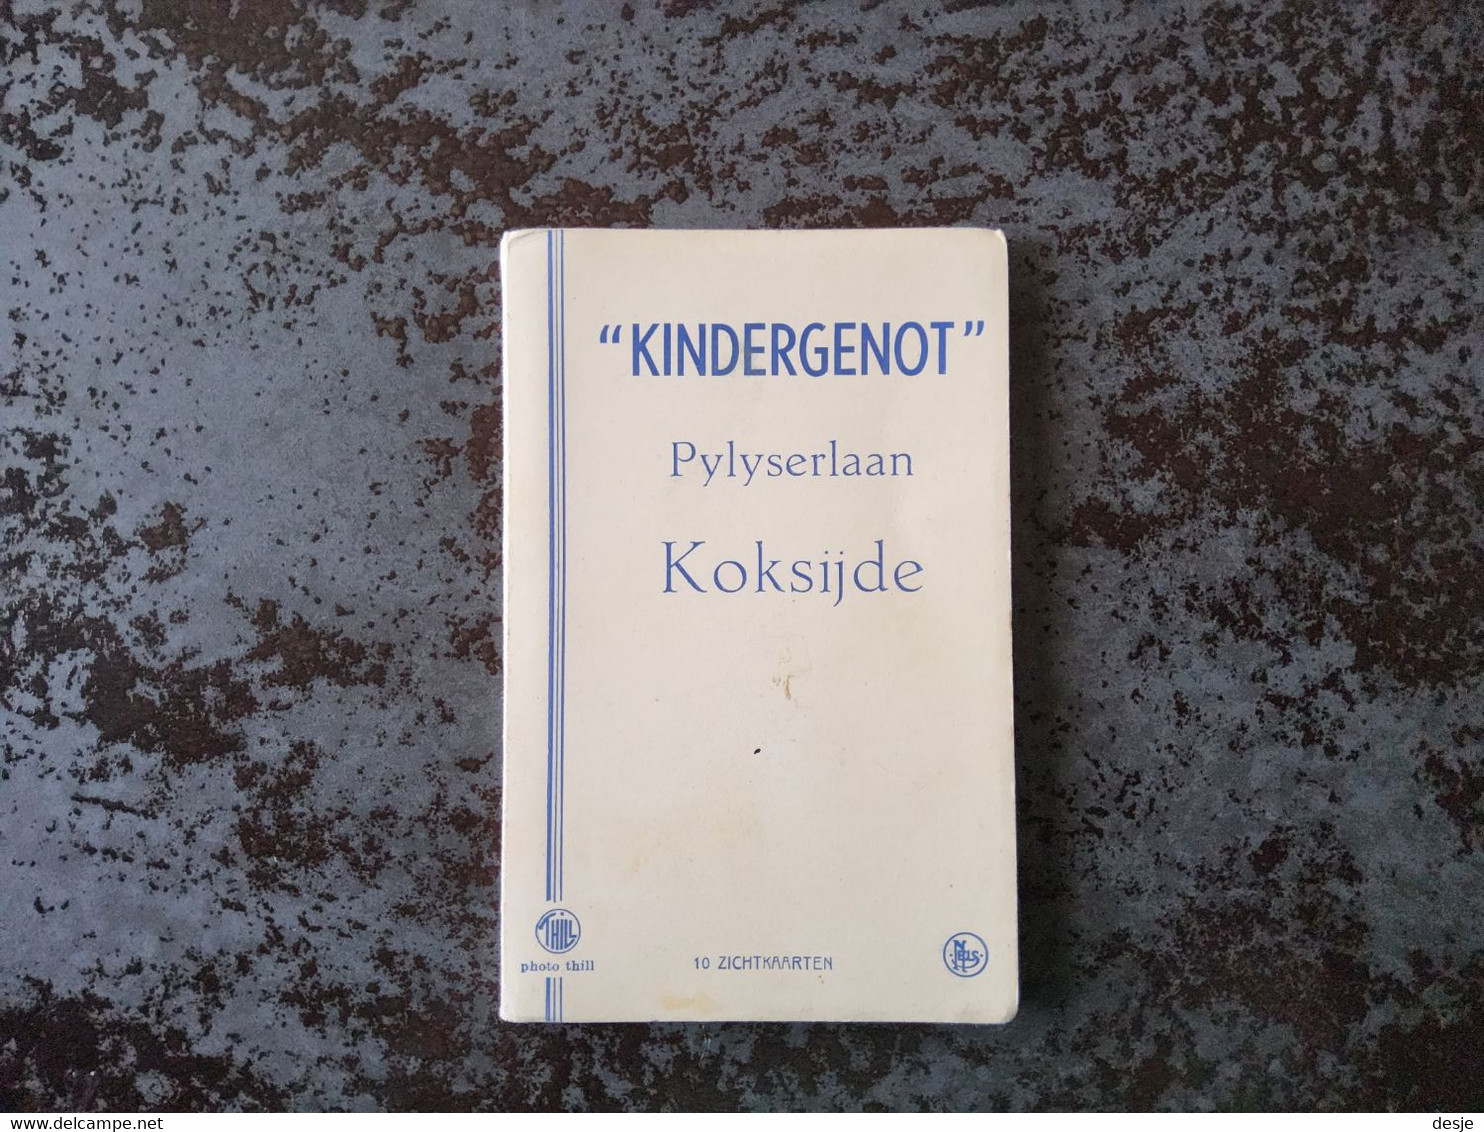 Pylyserlaan Koksijde " Kindergenot", 10 Zichtkaarten - De Haan